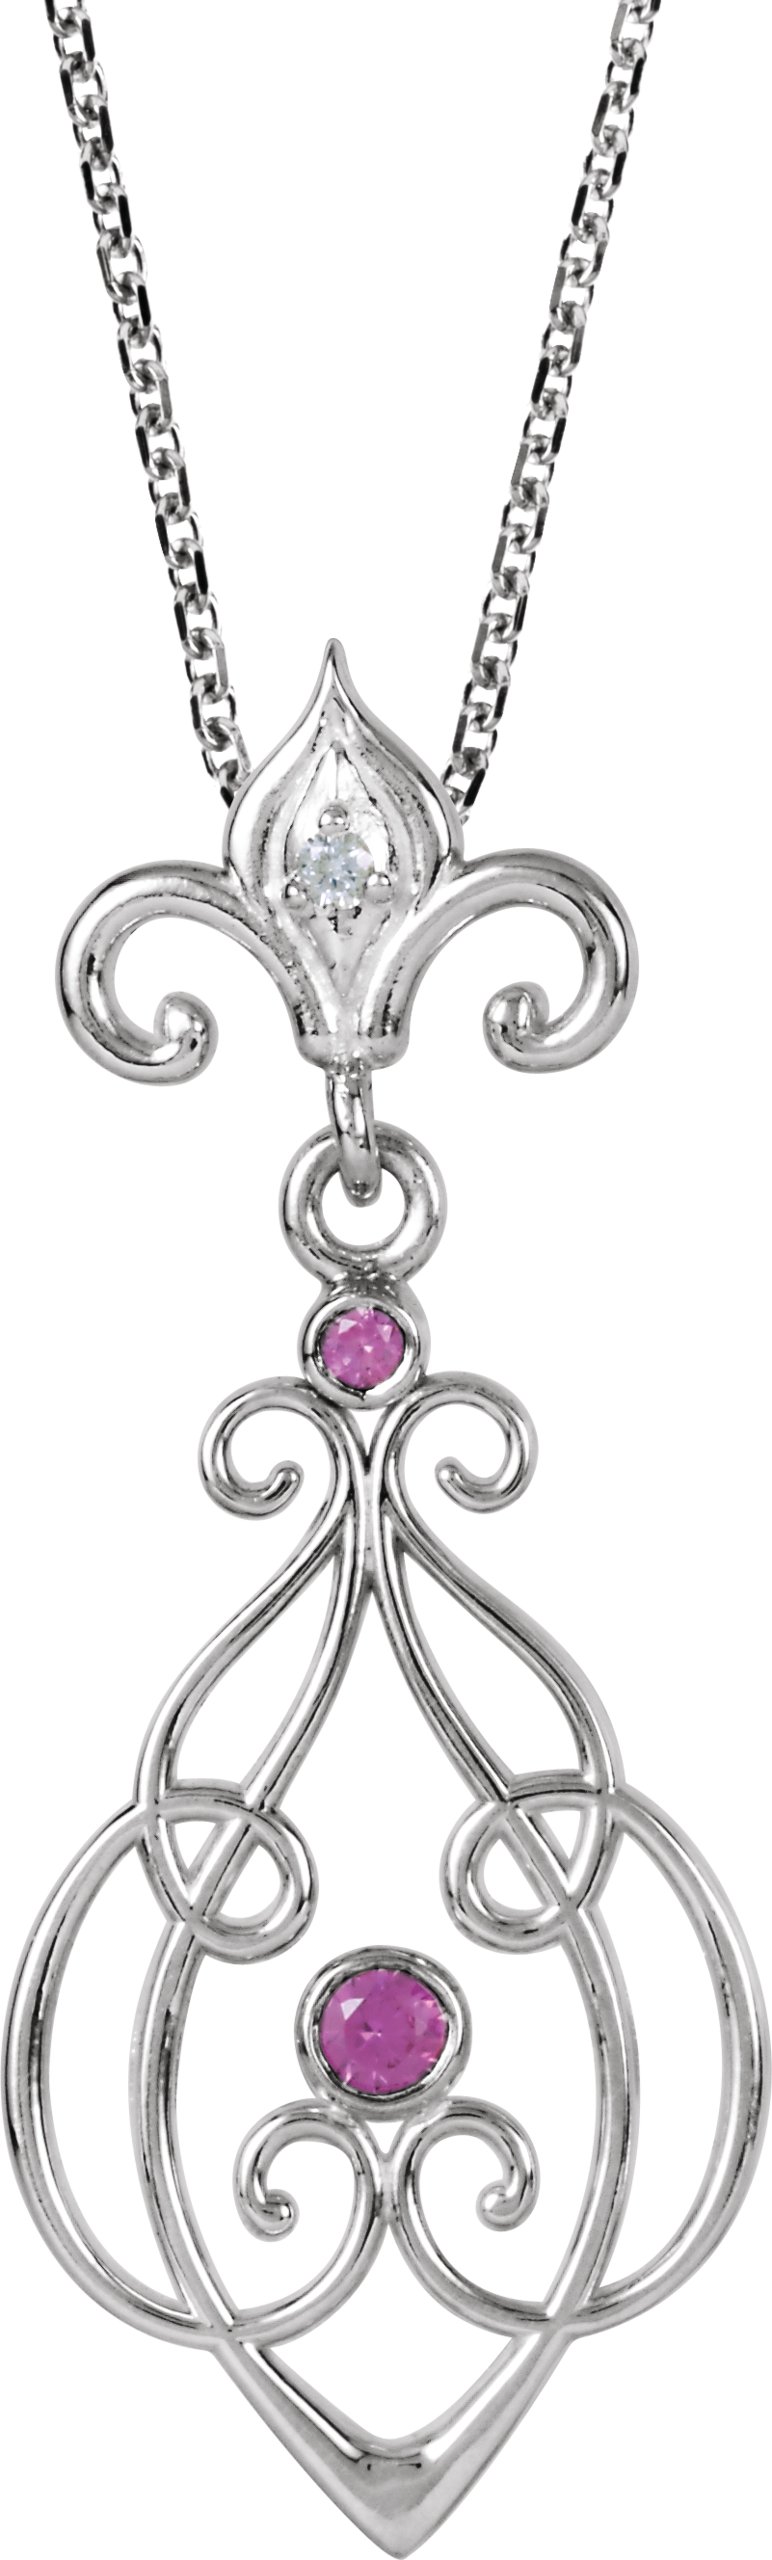 Fleur-De-Lis Decorative Dangle Pendant or Necklace